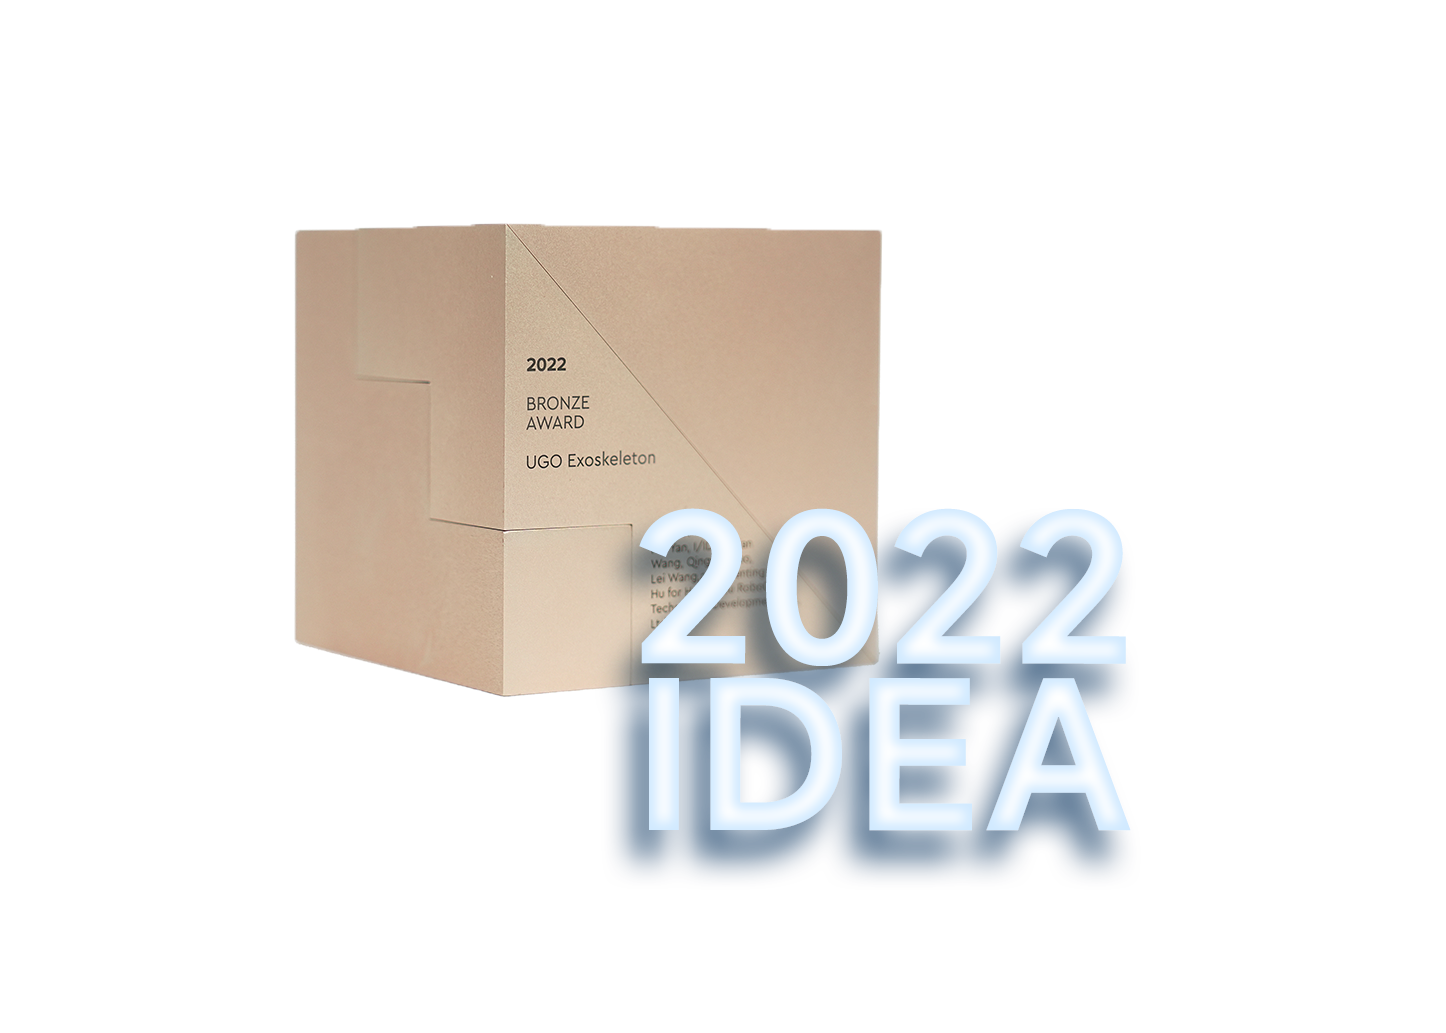 2022 IDEA 铜奖